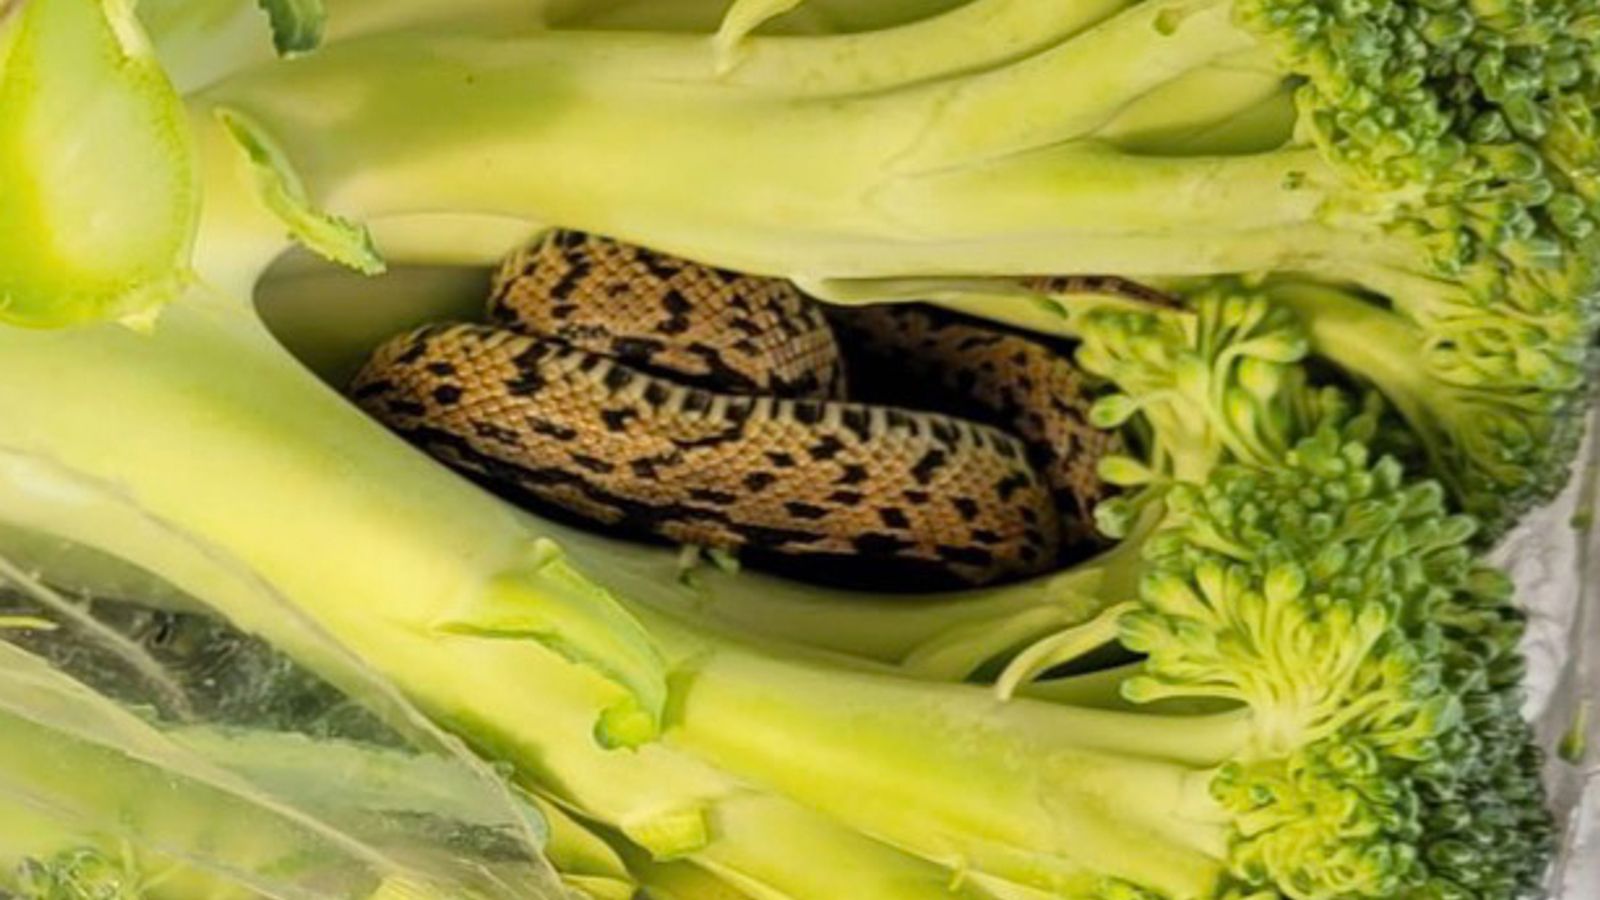 Shopper finds snake inside bag of broccoli from Aldi